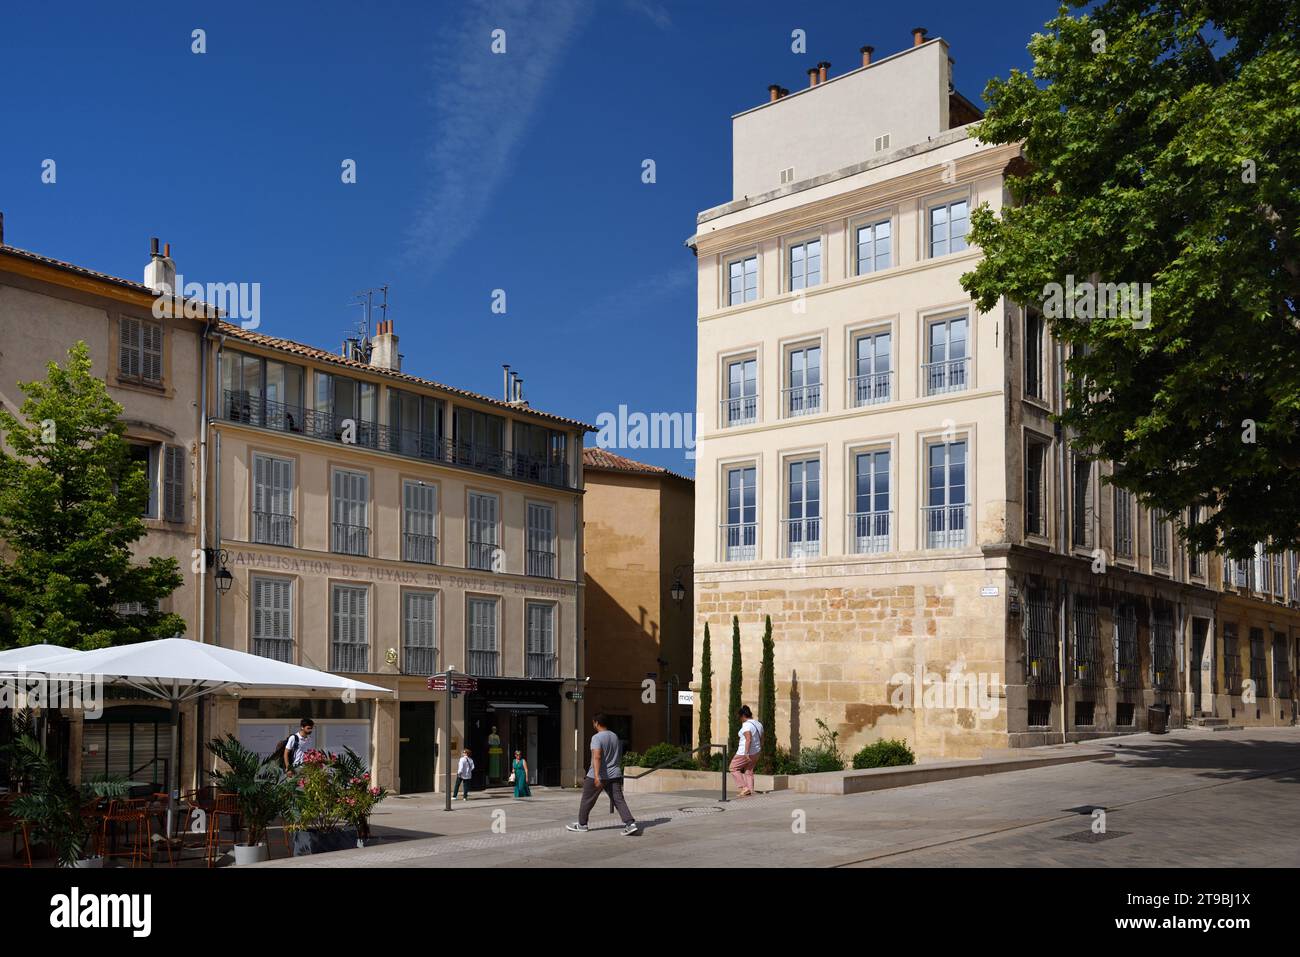 Trompe l'oeil motif de fenêtre ou peinture murale sur façade historique de la place du Verdun place de la ville Aix-en-Provence Porovence France Banque D'Images